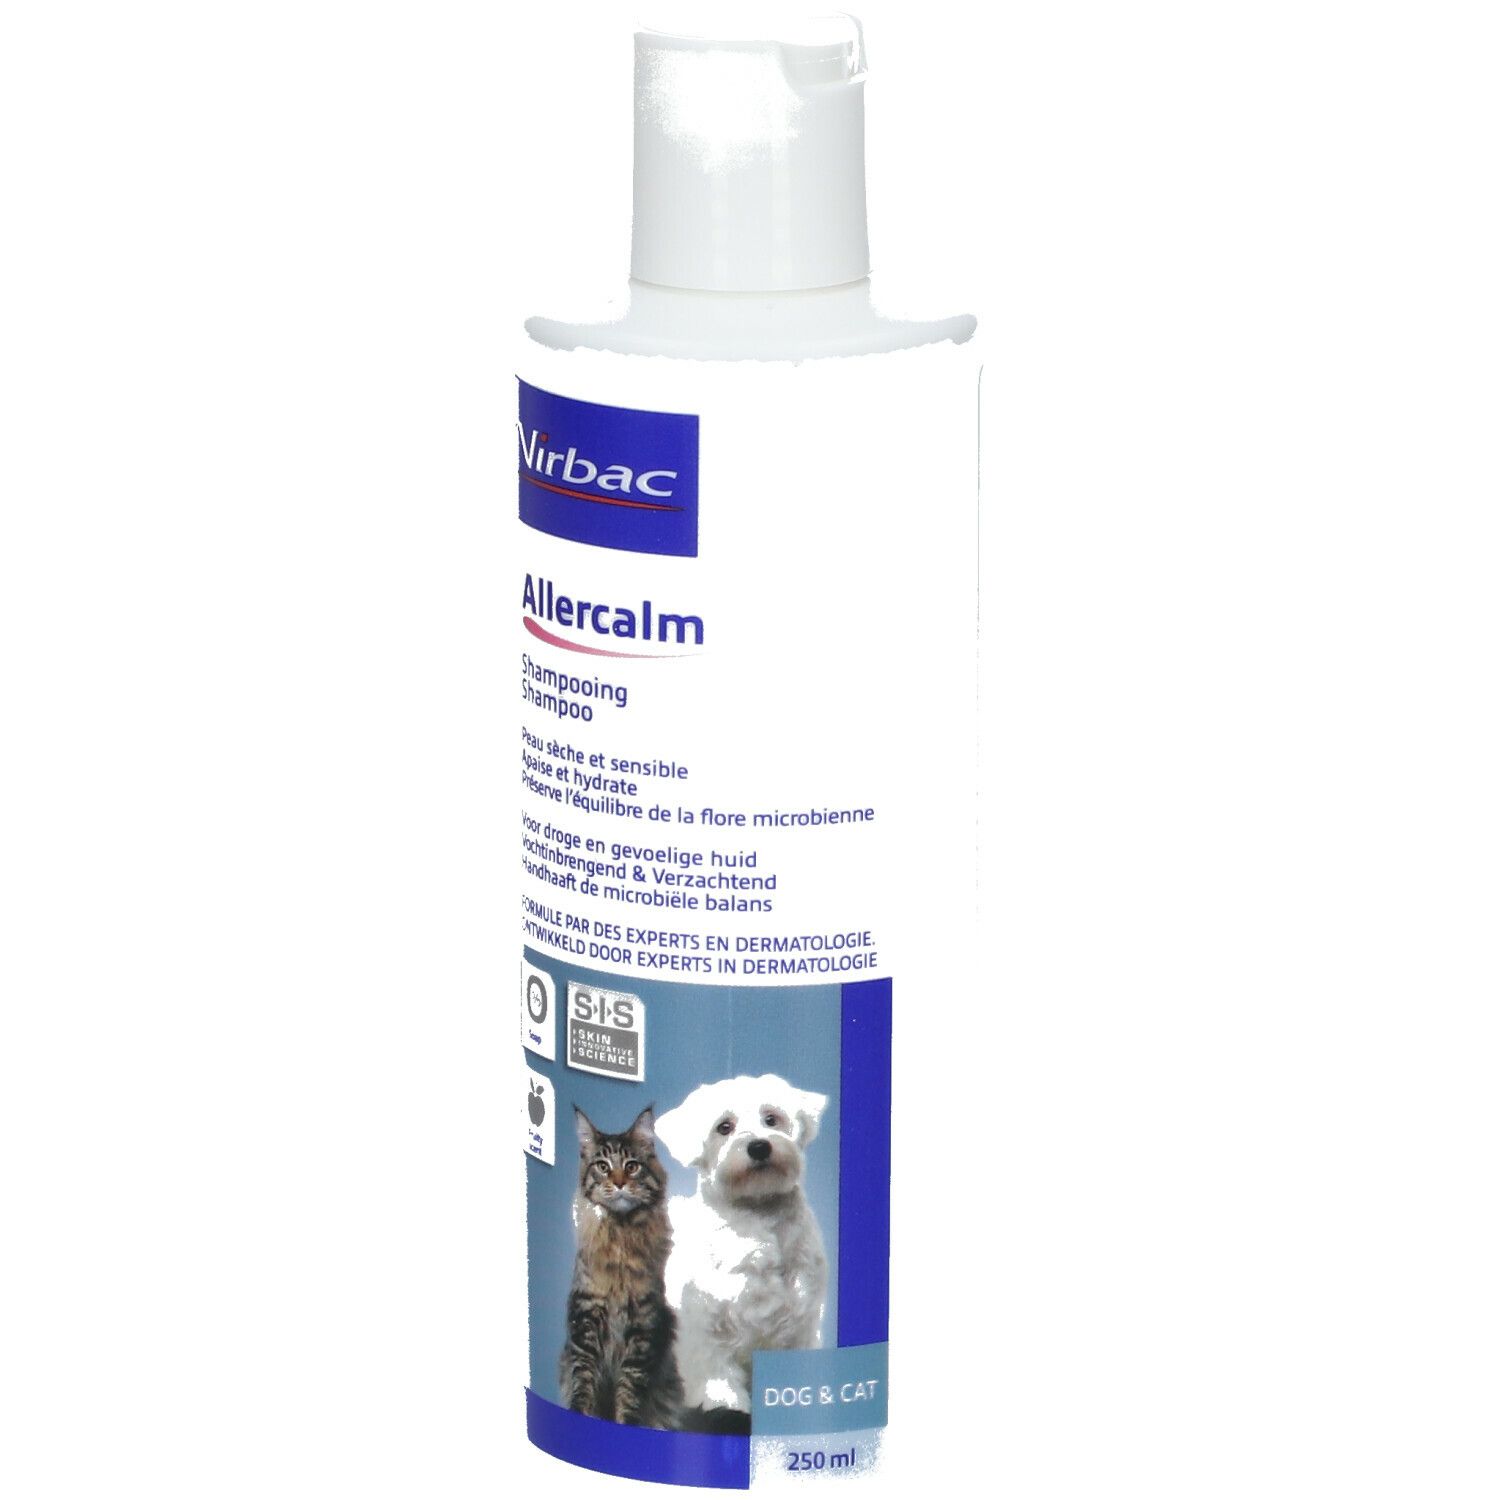 Virbac Allercalm™ dermatologisches Shampoo für Hunde und Katzen shop